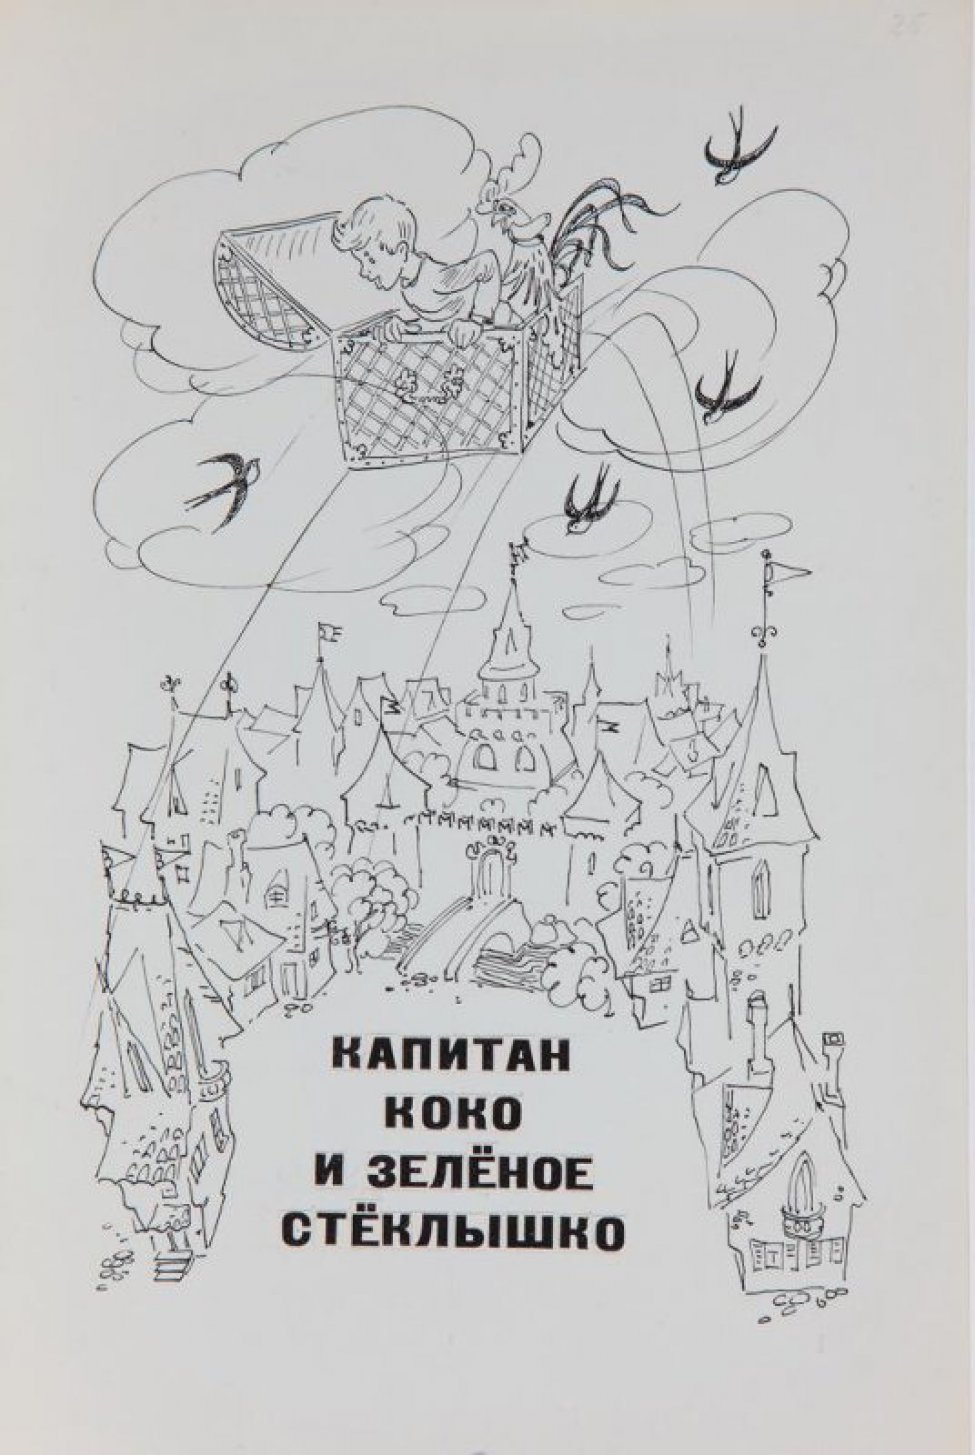 В нижней части листа справа - стилизованное изображение слона в светлых брюках, пиджаке, кепке, с чемоданом в наклейках и с букетом в хоботе; слева - две обезьянки. В верхней части слева - разметка карандашом и текст: "Возвращение слона".